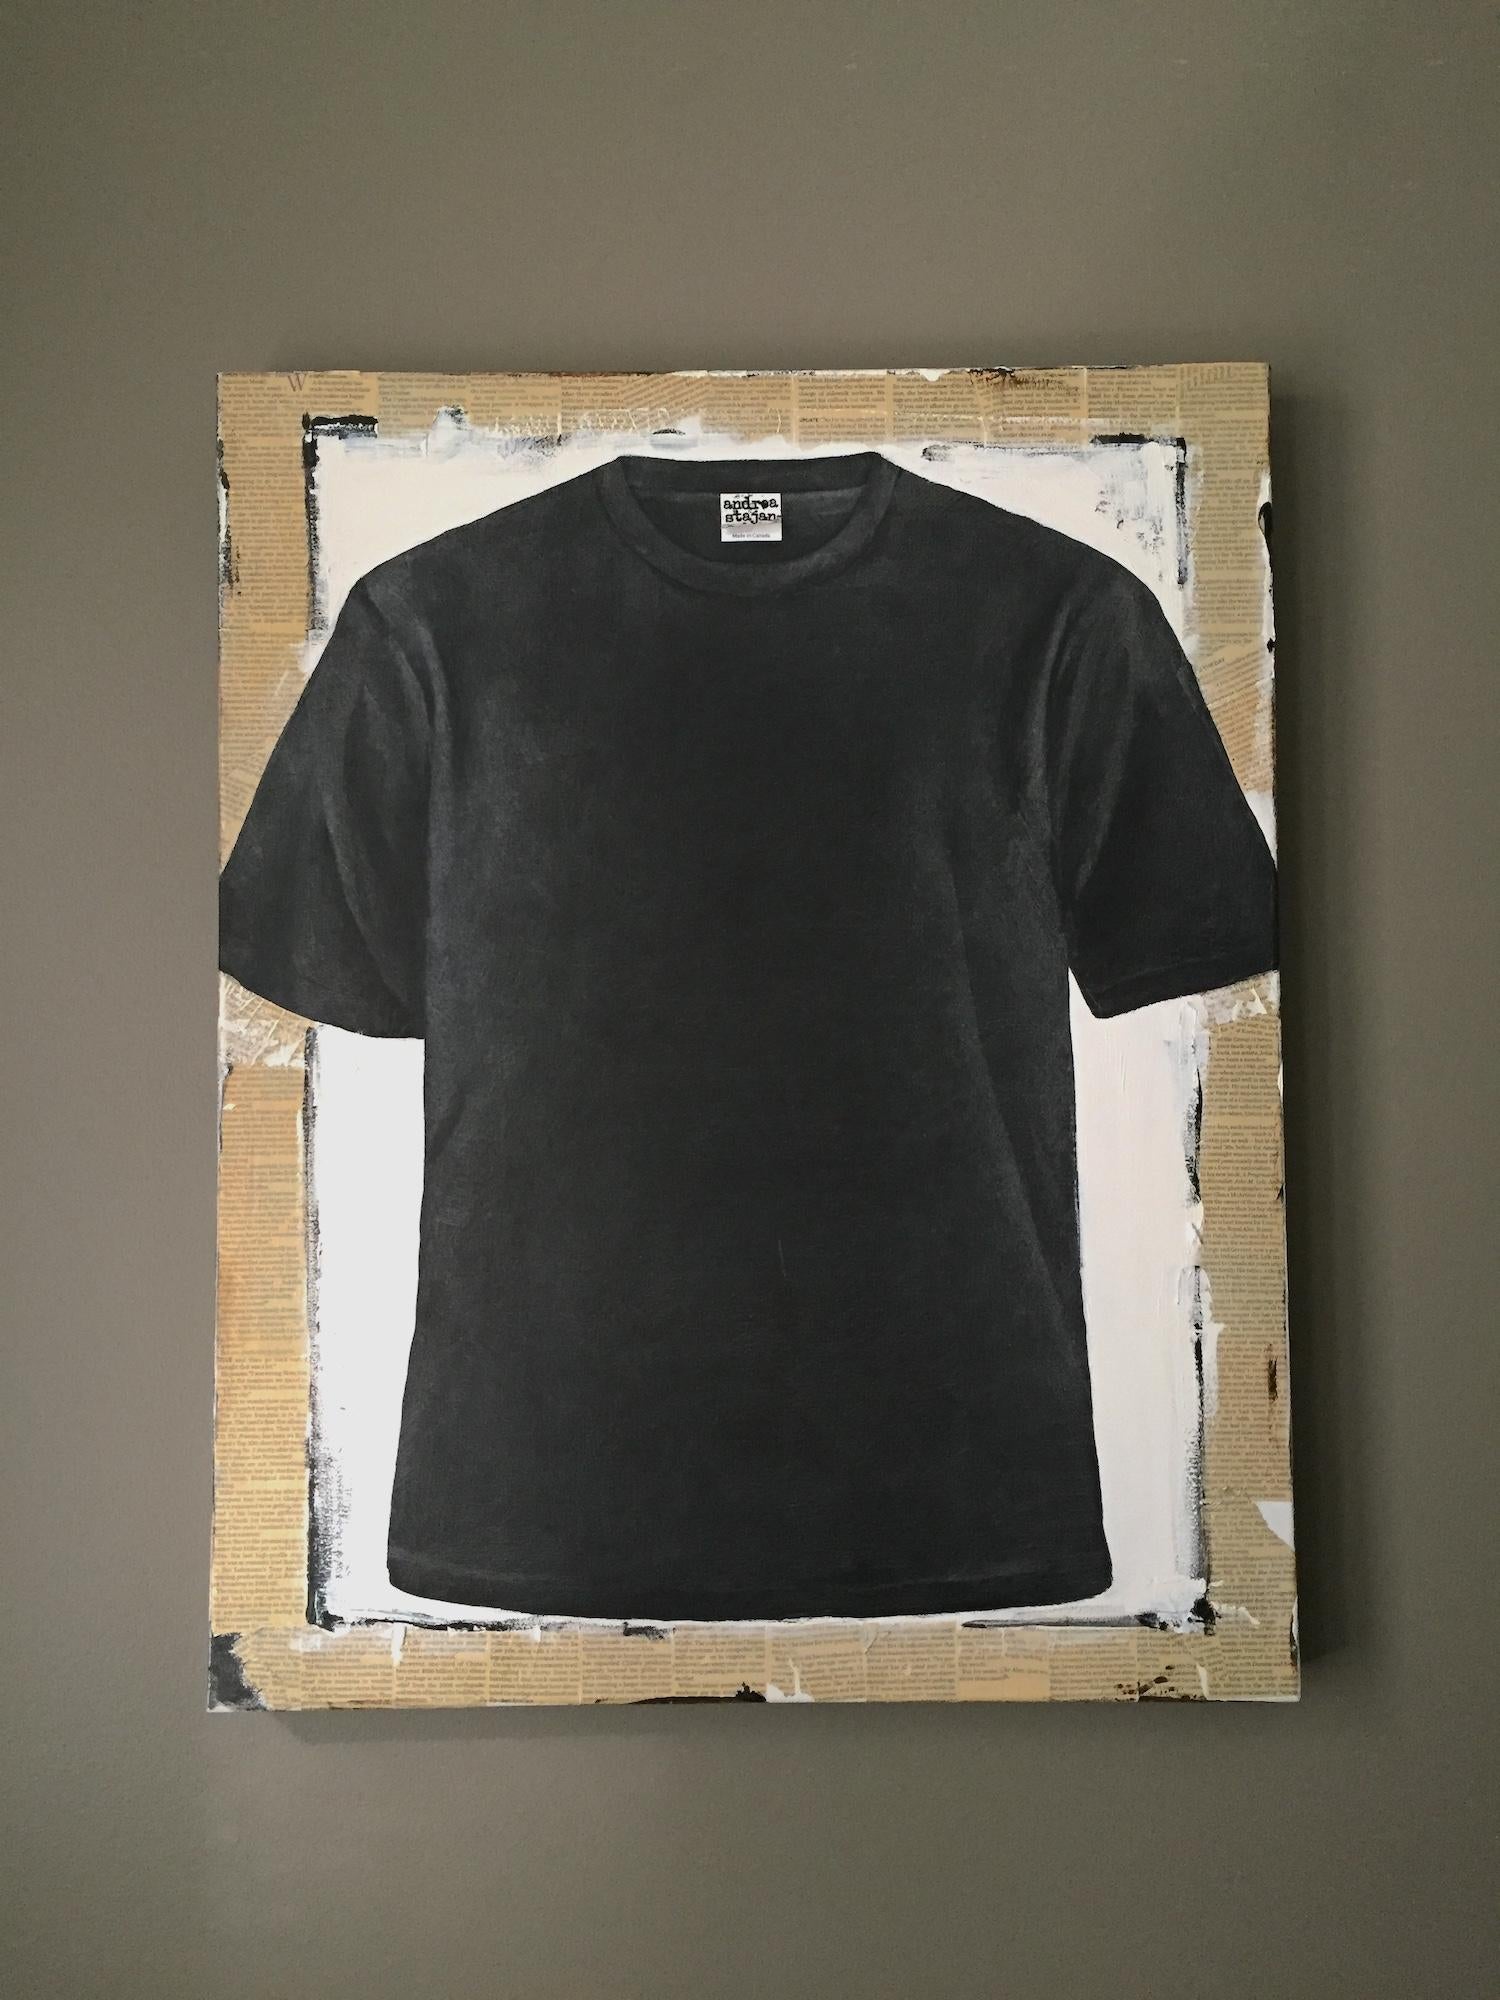 Sans titre, T-shirt 2 (série 1 - 9)  - Contemporain Art par Andrea Stajan-Ferkul